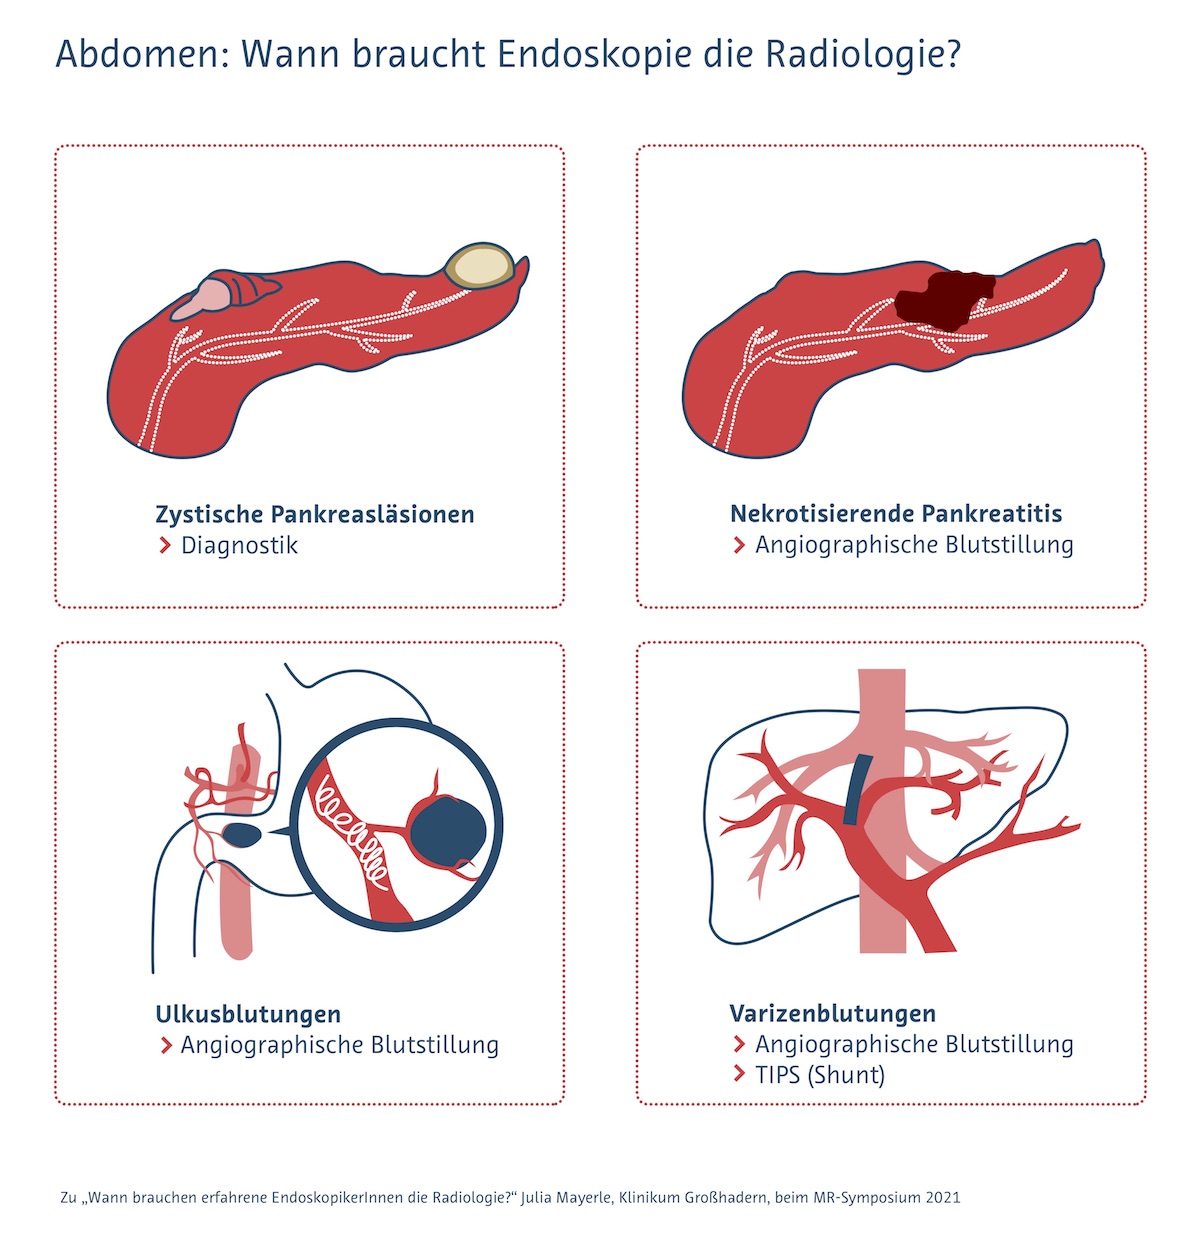 Indikationen für den Einsatz radiologischer Verfahren als Ergänzung zur Endoskopie